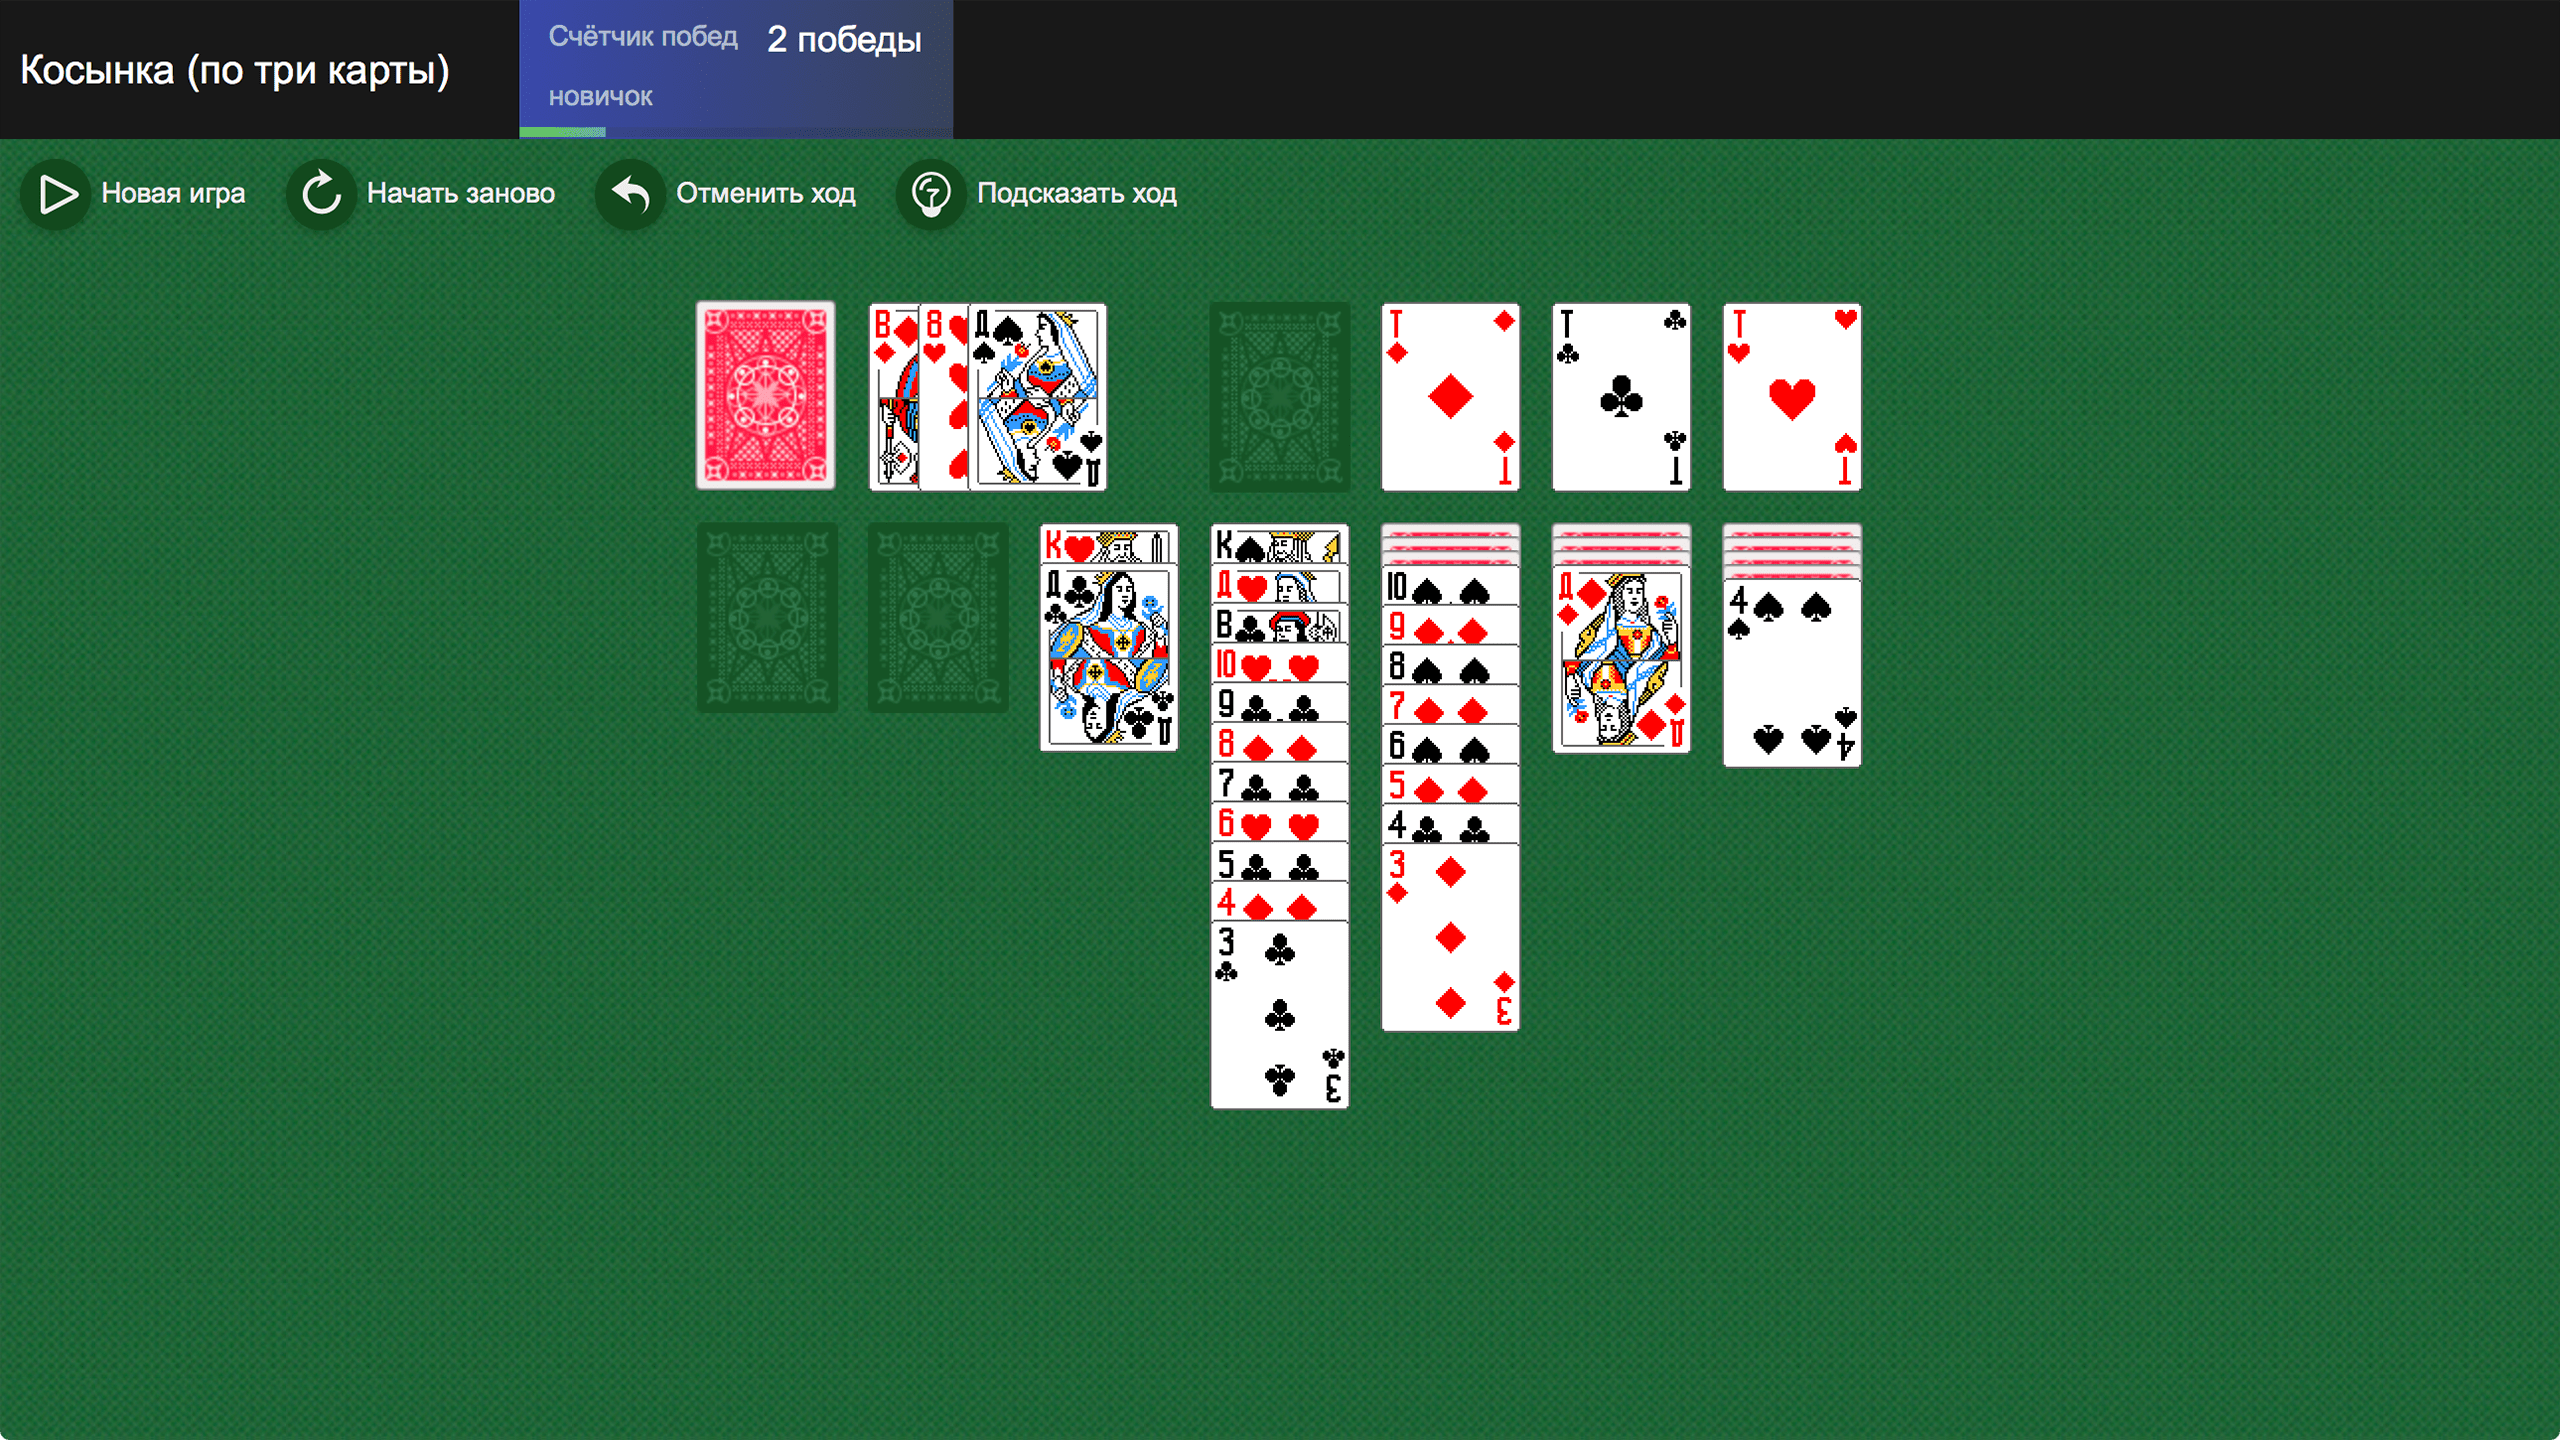 Косынка онлайн играть бесплатно три карты казино вулкан длинные нарды на деньги онлайн